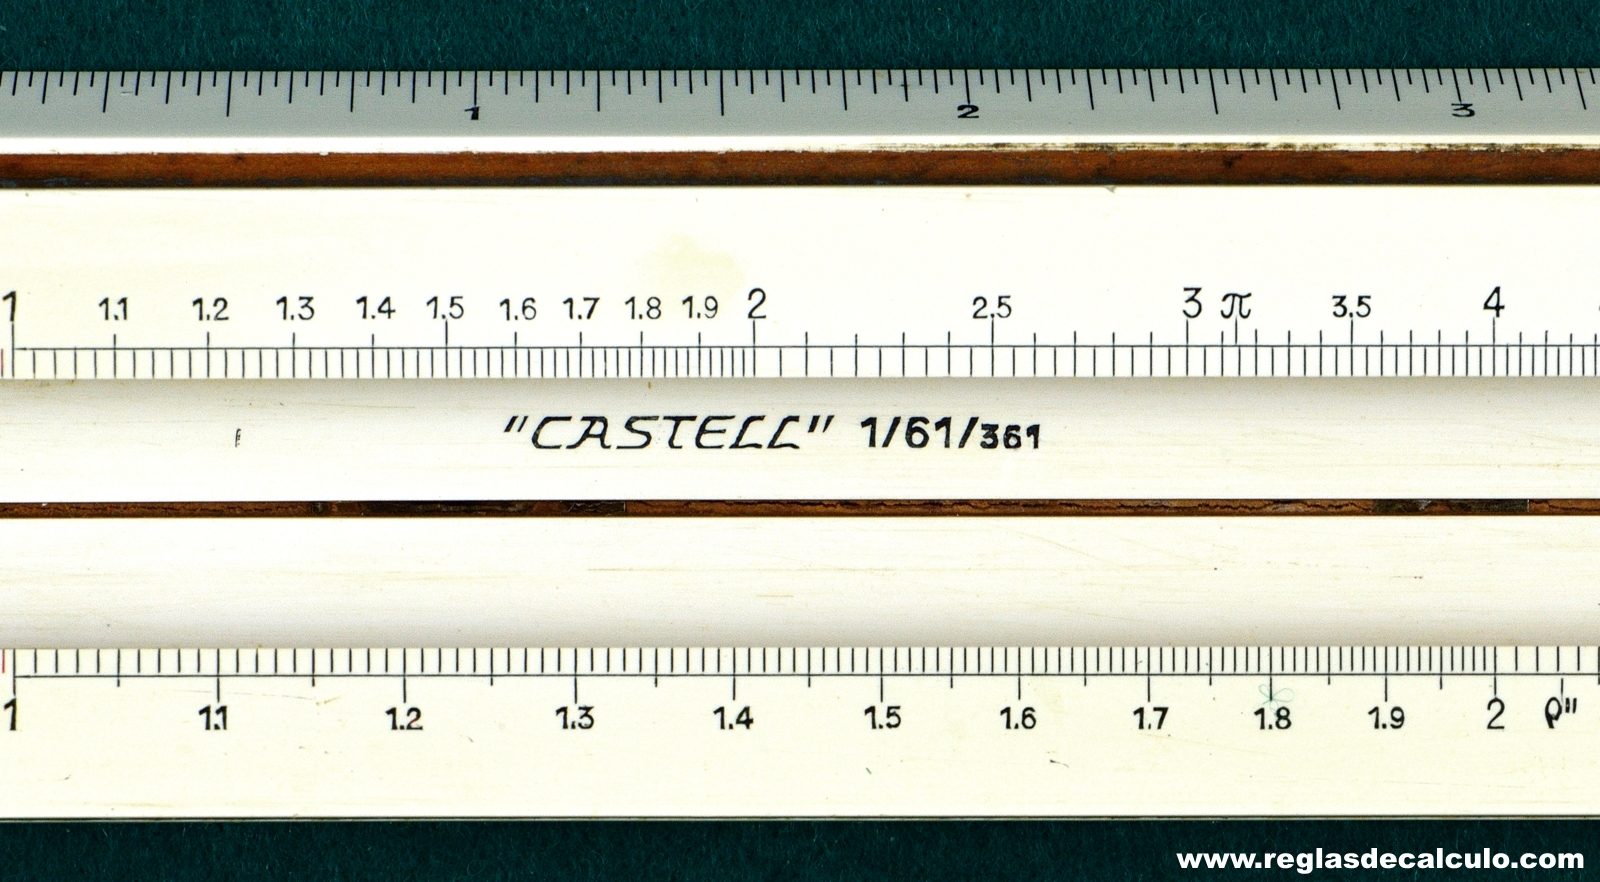 Regla de Calculo Slide rule Faber Castell 1/61/361